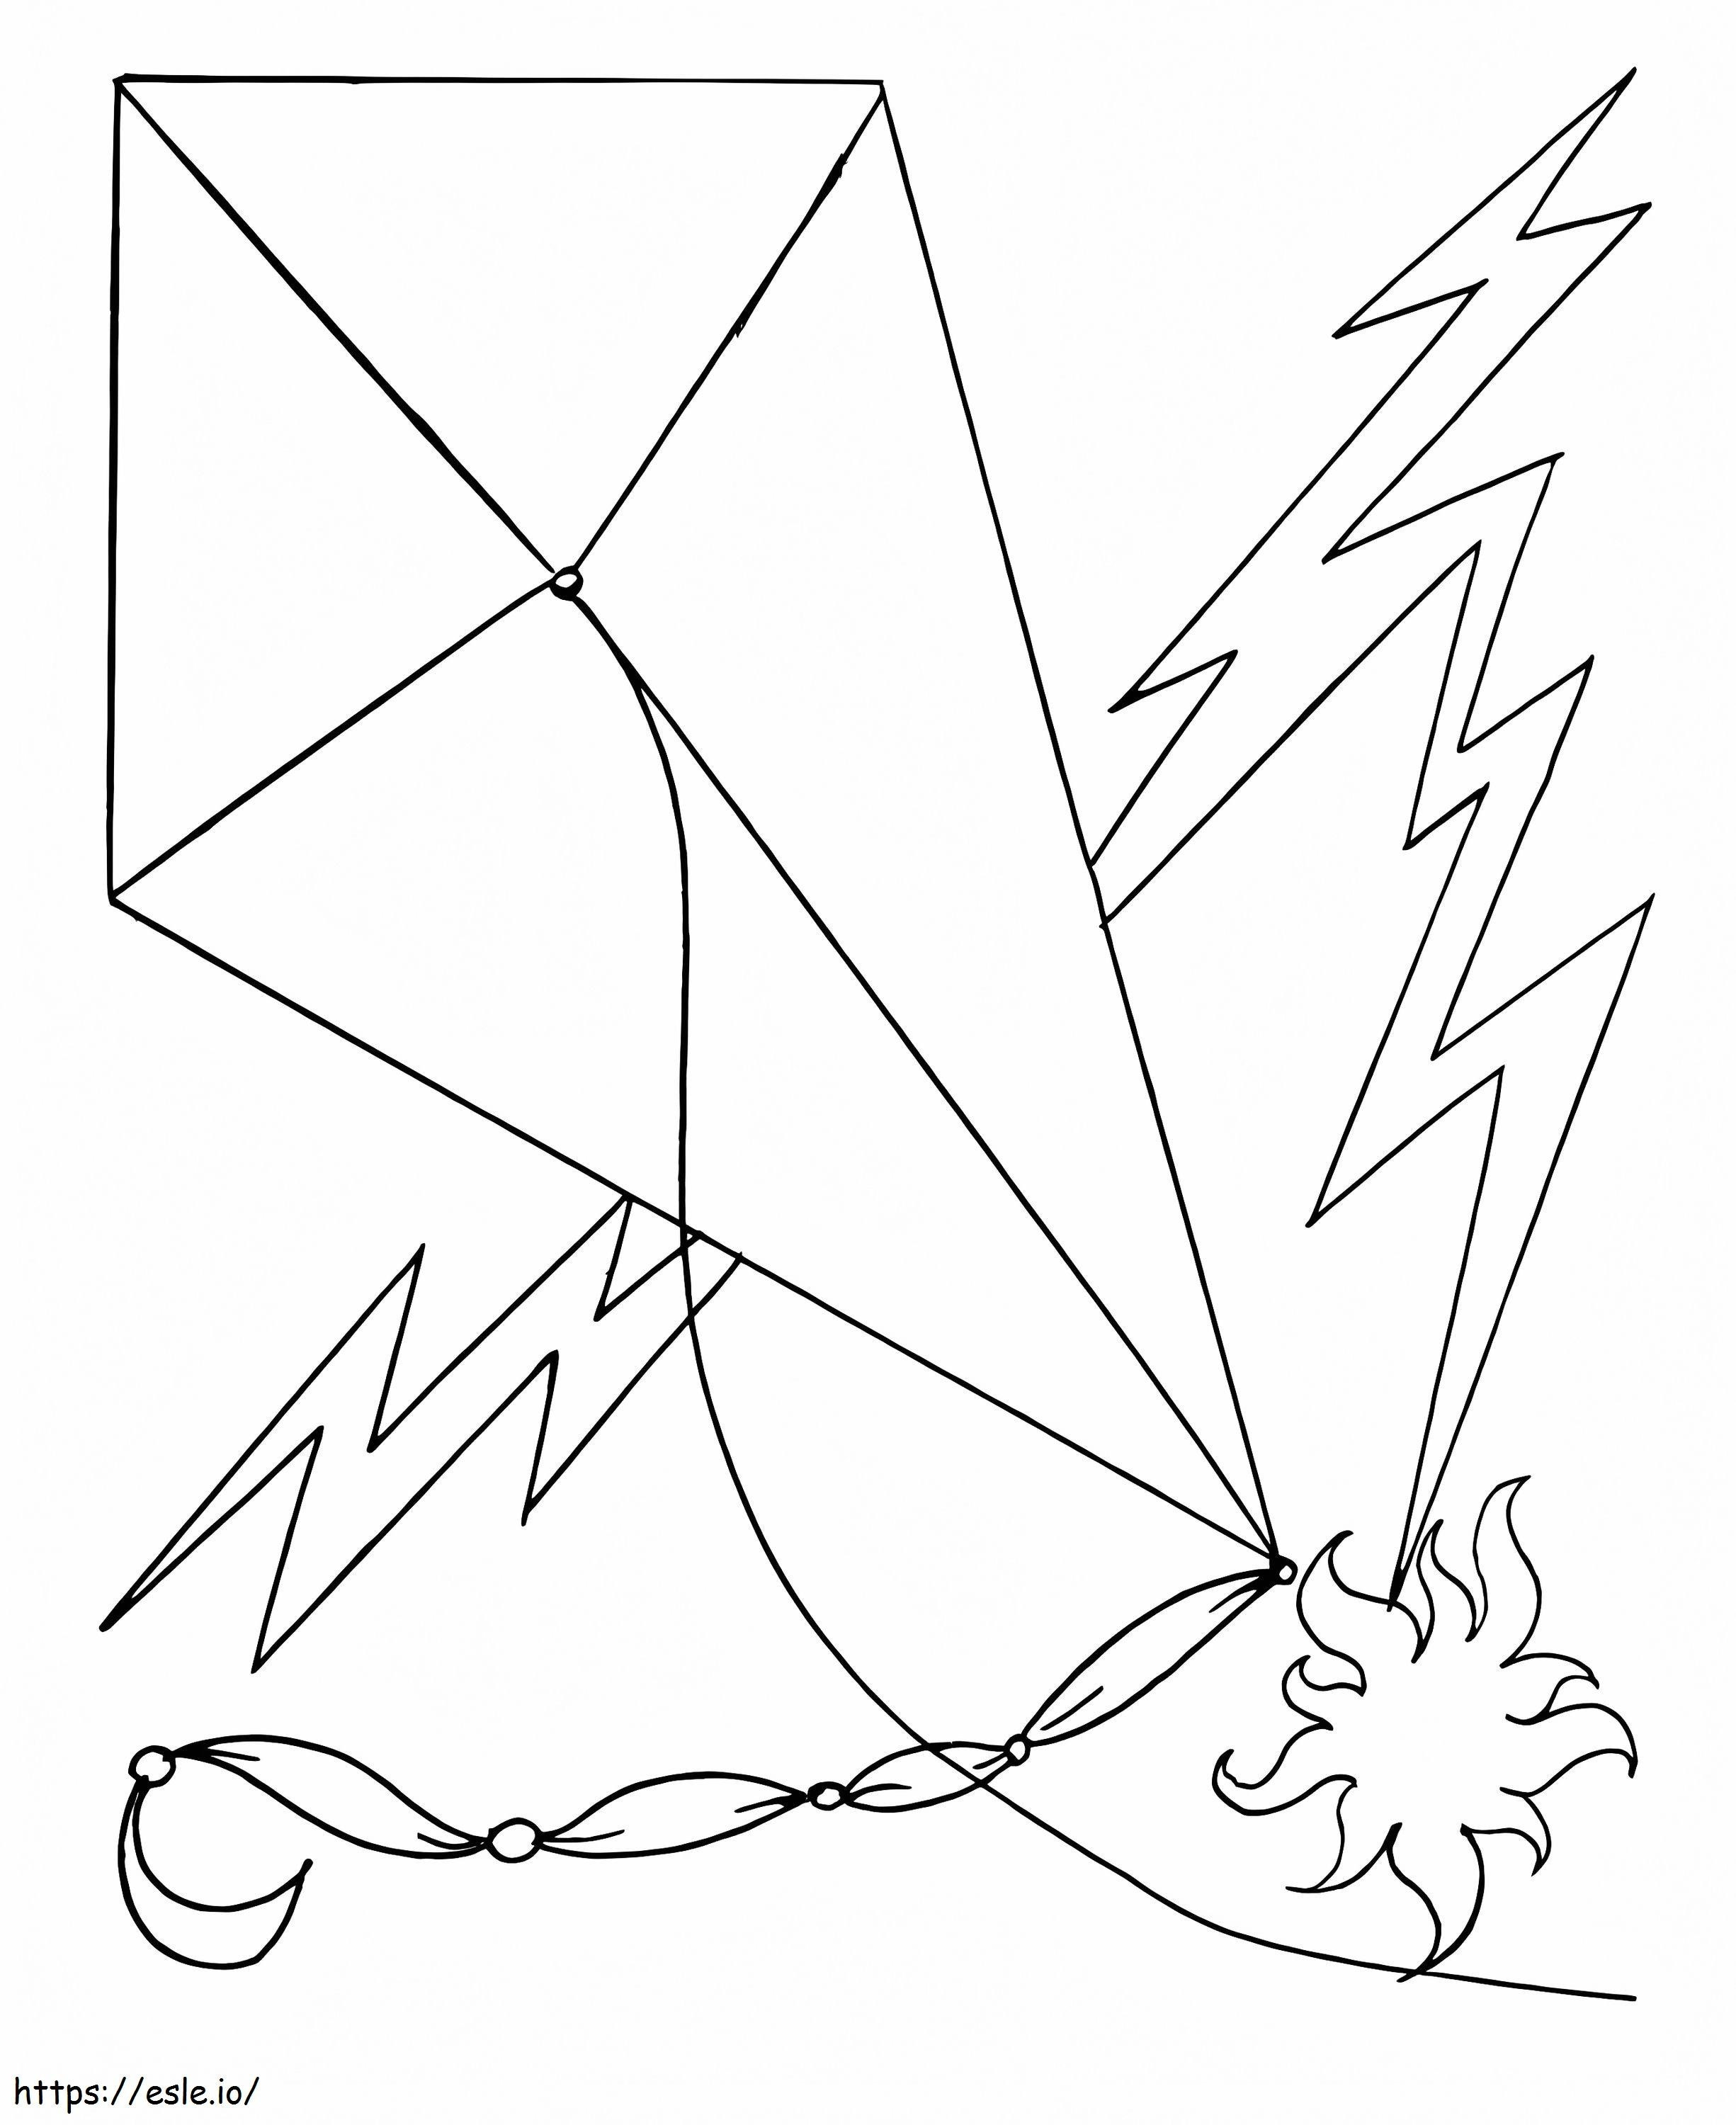 Coloriage Cerf-volant et foudre à imprimer dessin